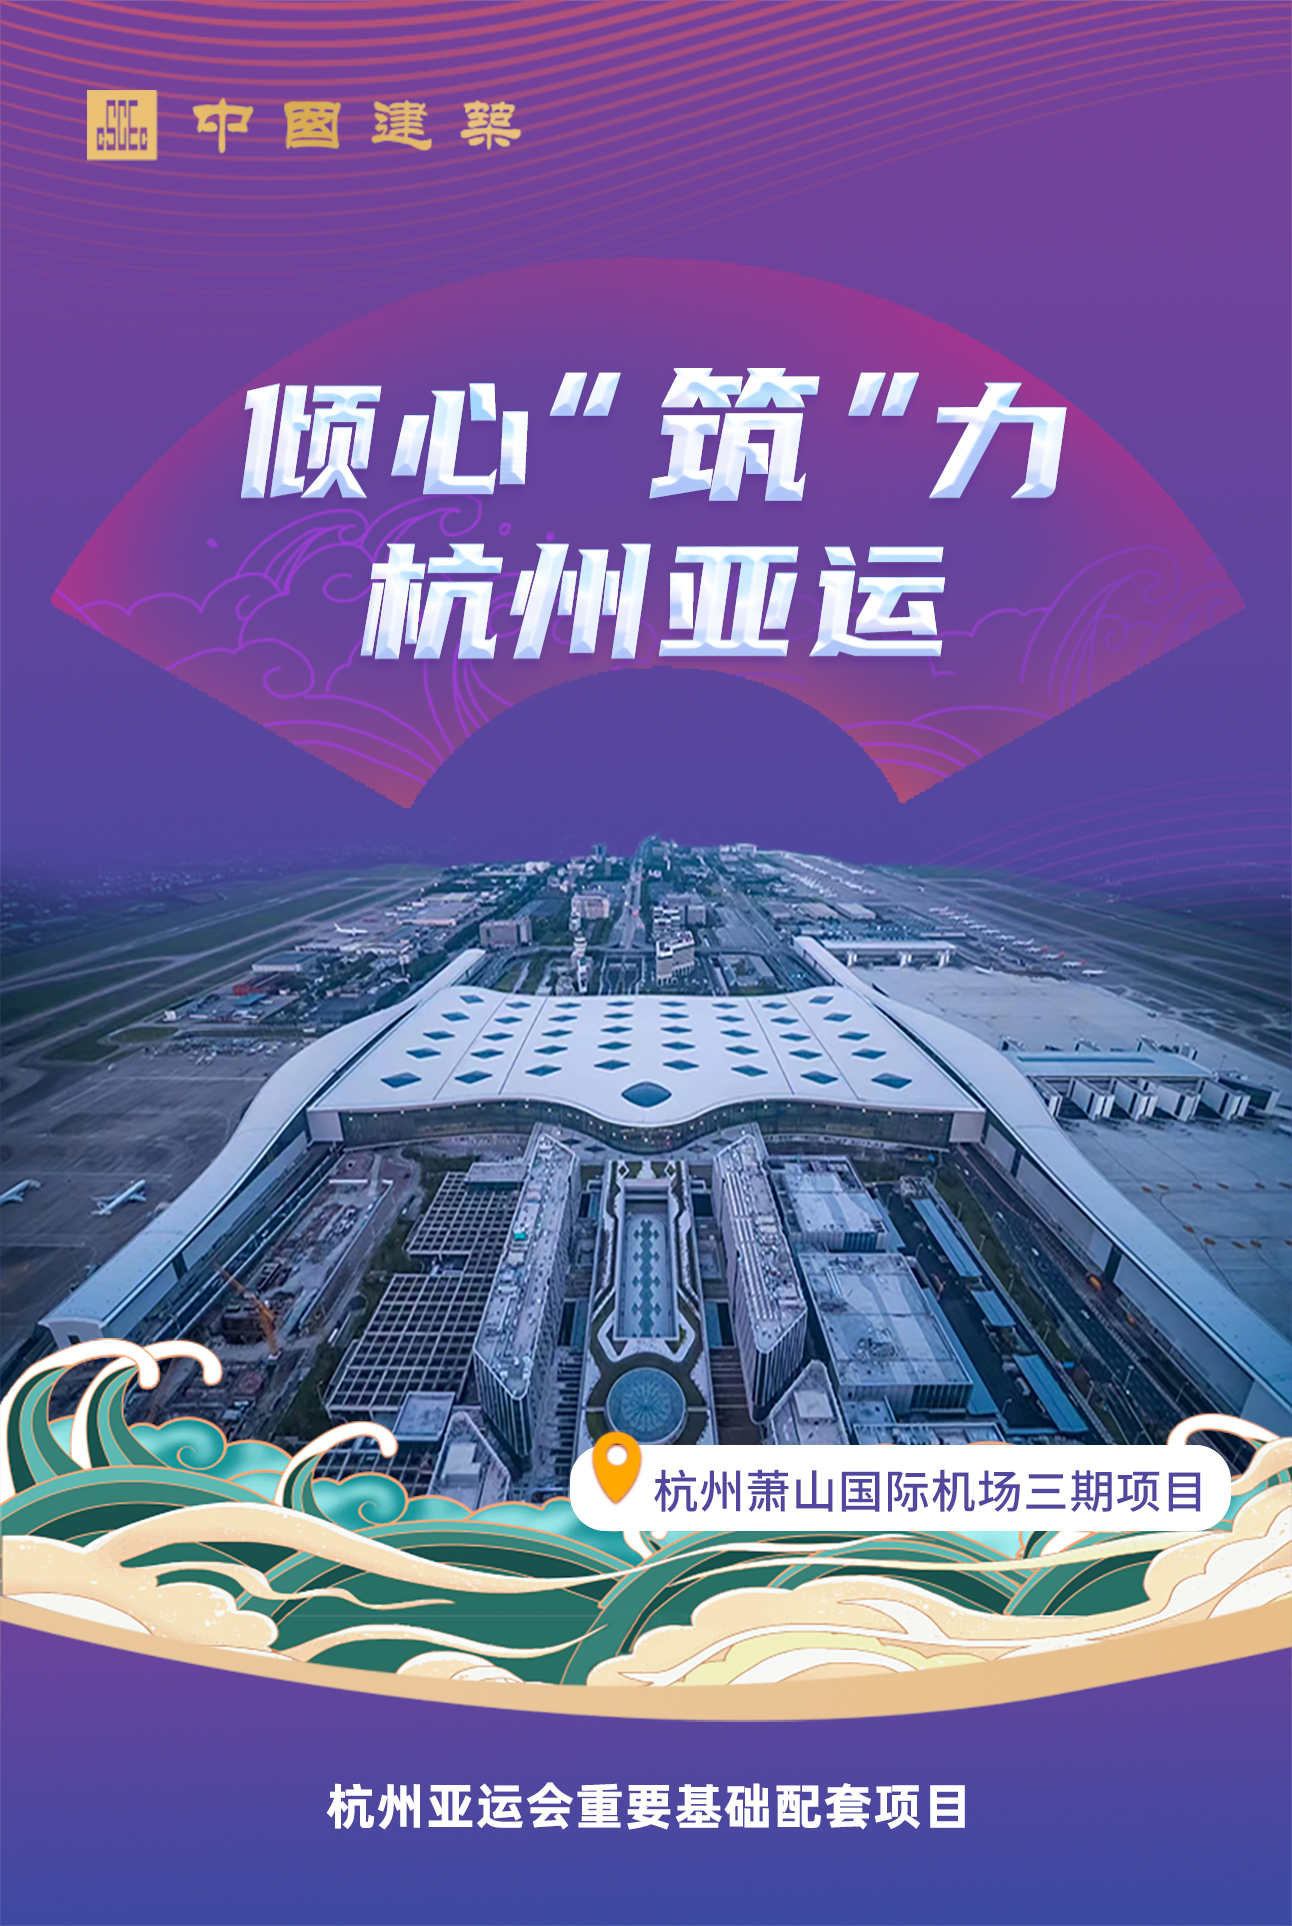 杭州萧山国际机场三期项目.jpg